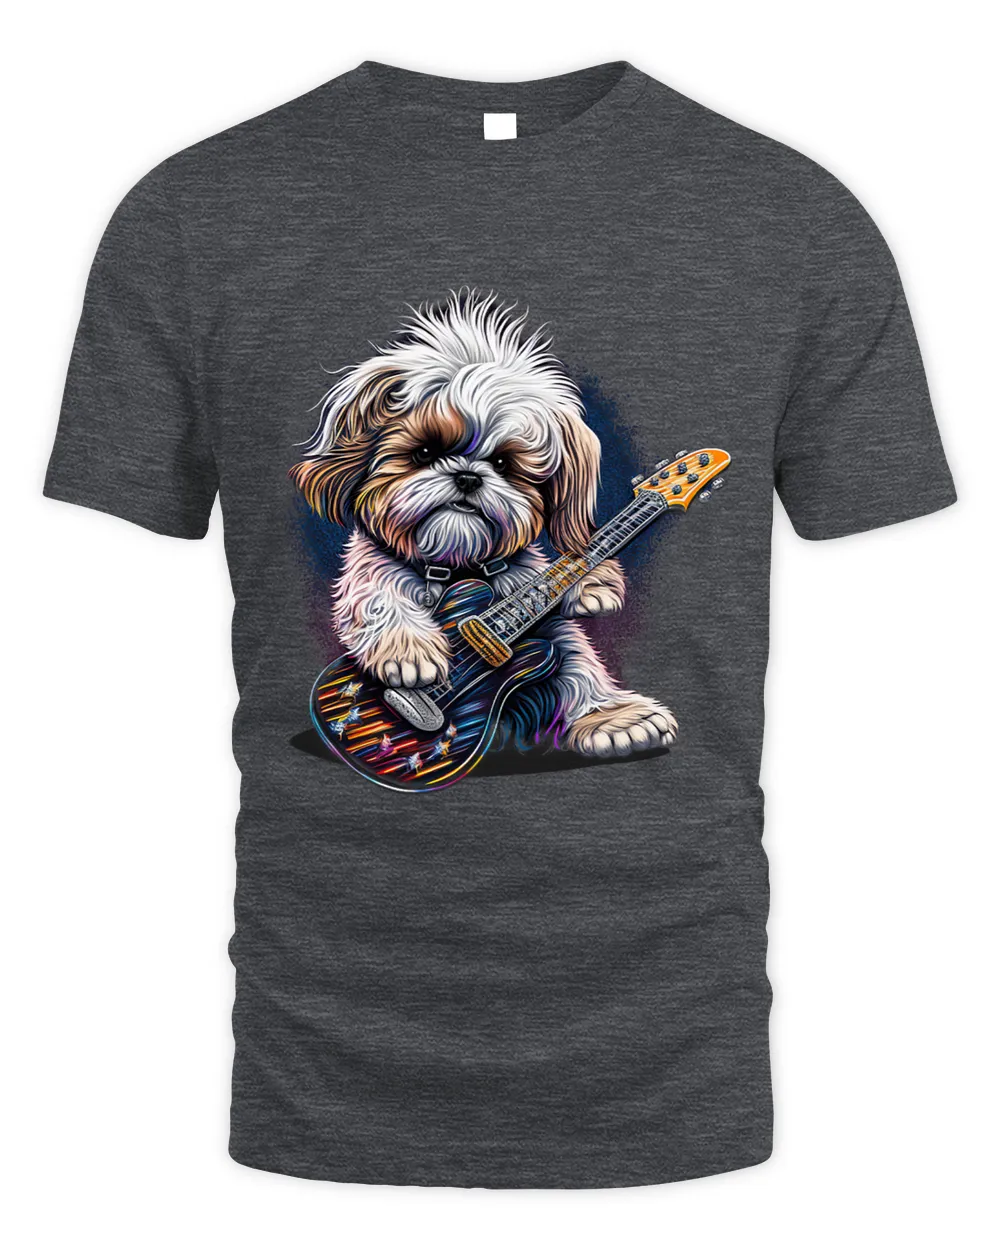 Shih Tzu dog Playing Electric Guitar Rock 1